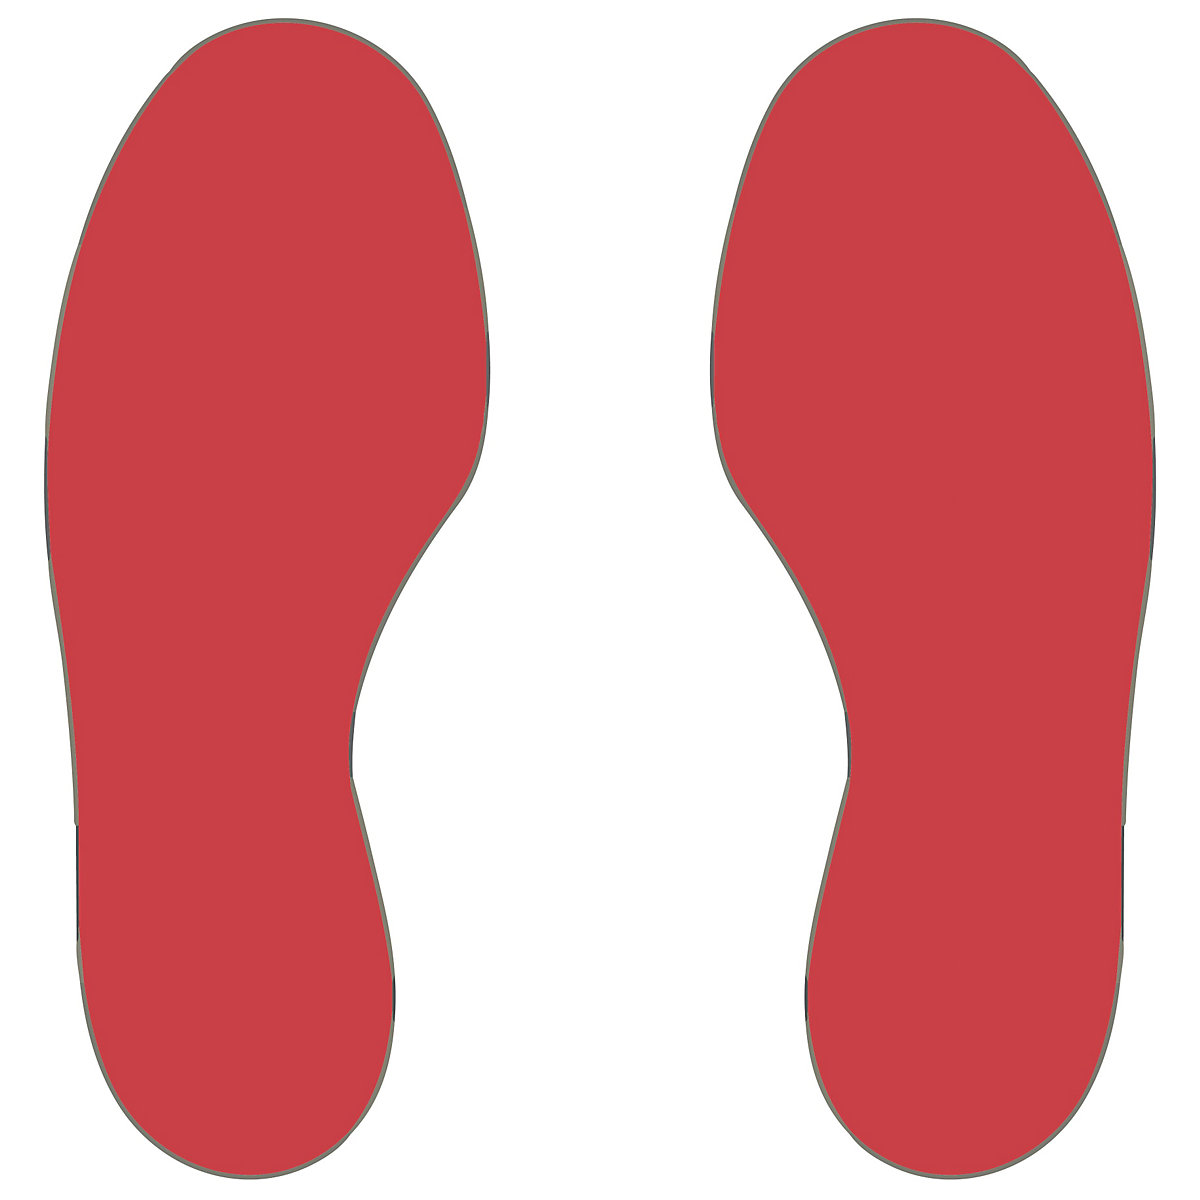 PVC padlójelölések, lábak, 5 jobb / 5 bal láb, cs. e. 10 db, piros